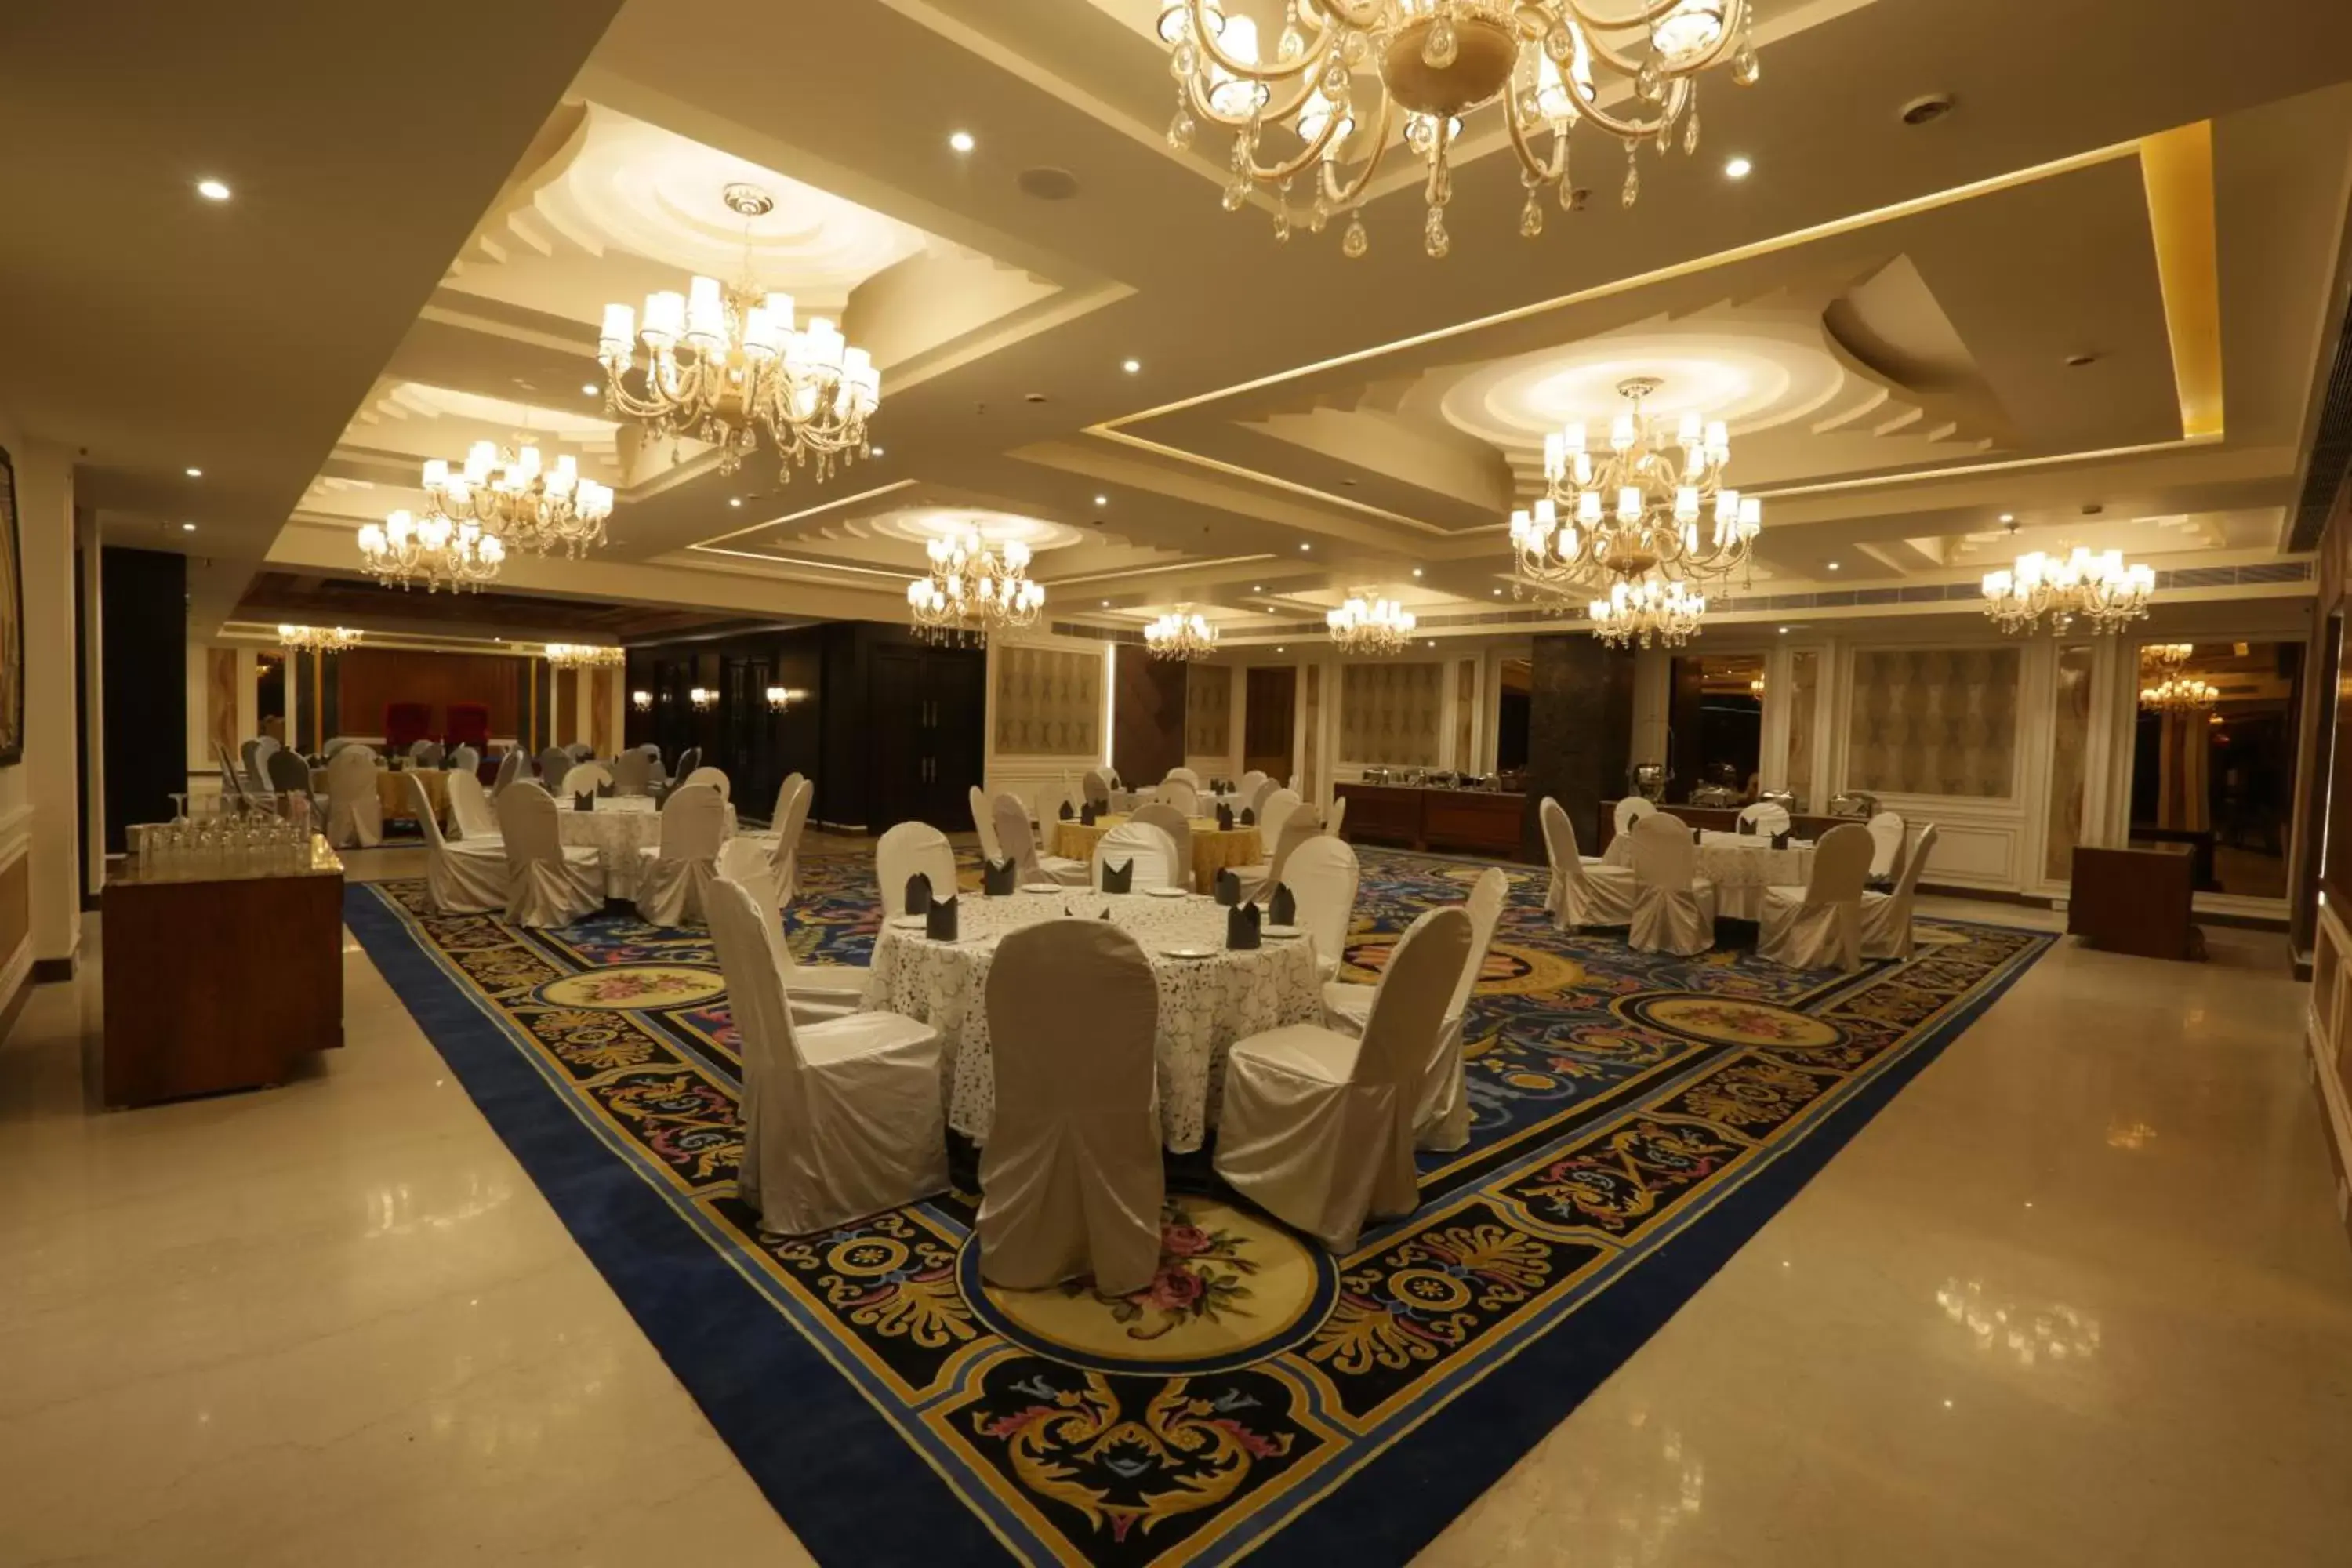 Banquet/Function facilities, Banquet Facilities in Ramada Encore Jalandhar